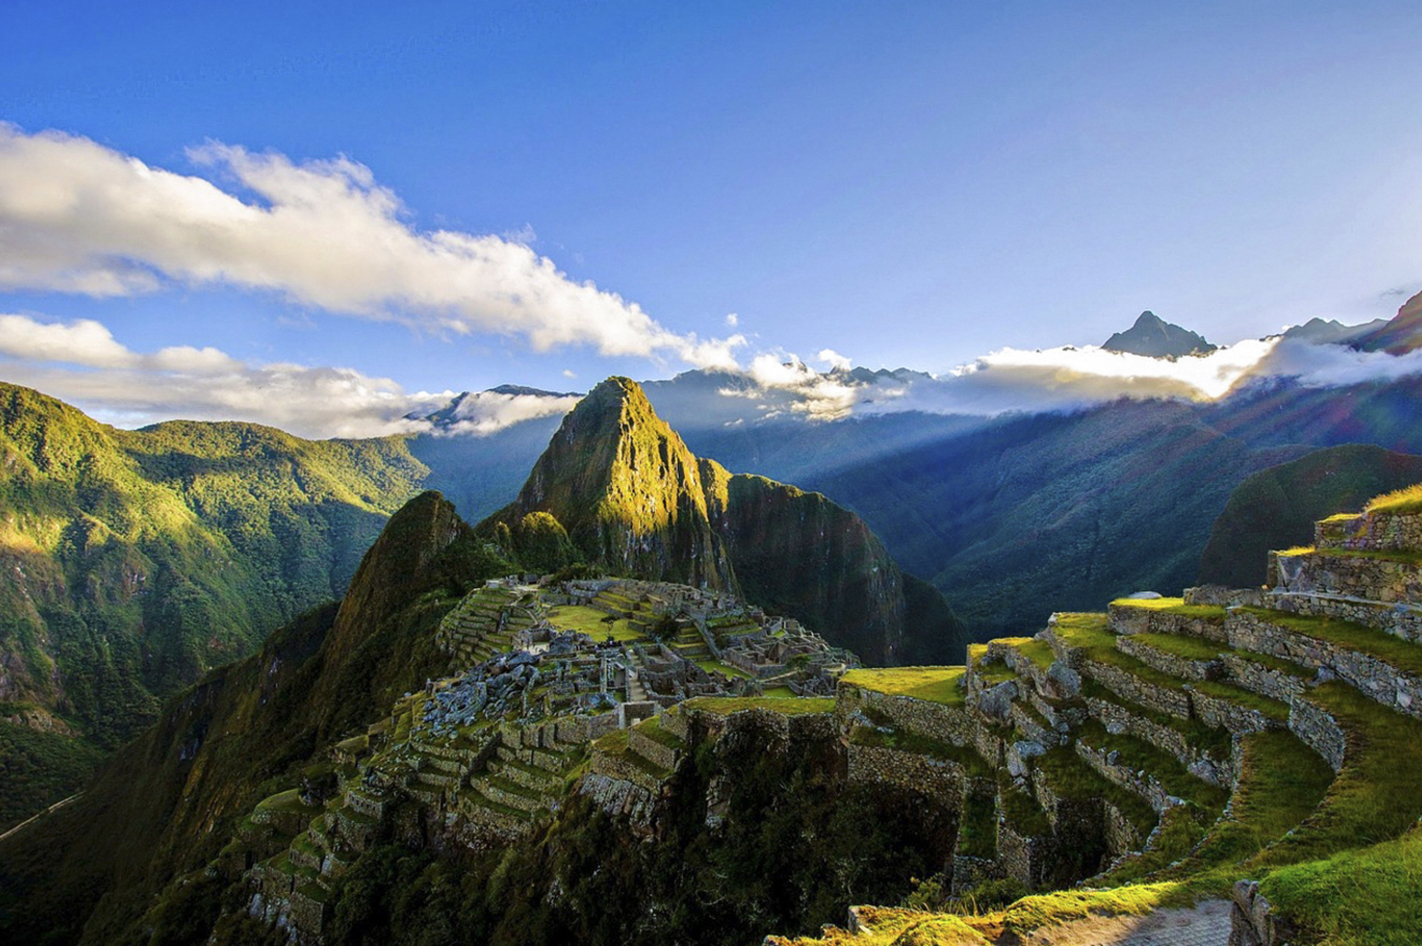 Abenteuerreise in Peru für 2 (7 Tage) – Berge, Inka-Kultur & Amazonas: Abenteuer in Peru!